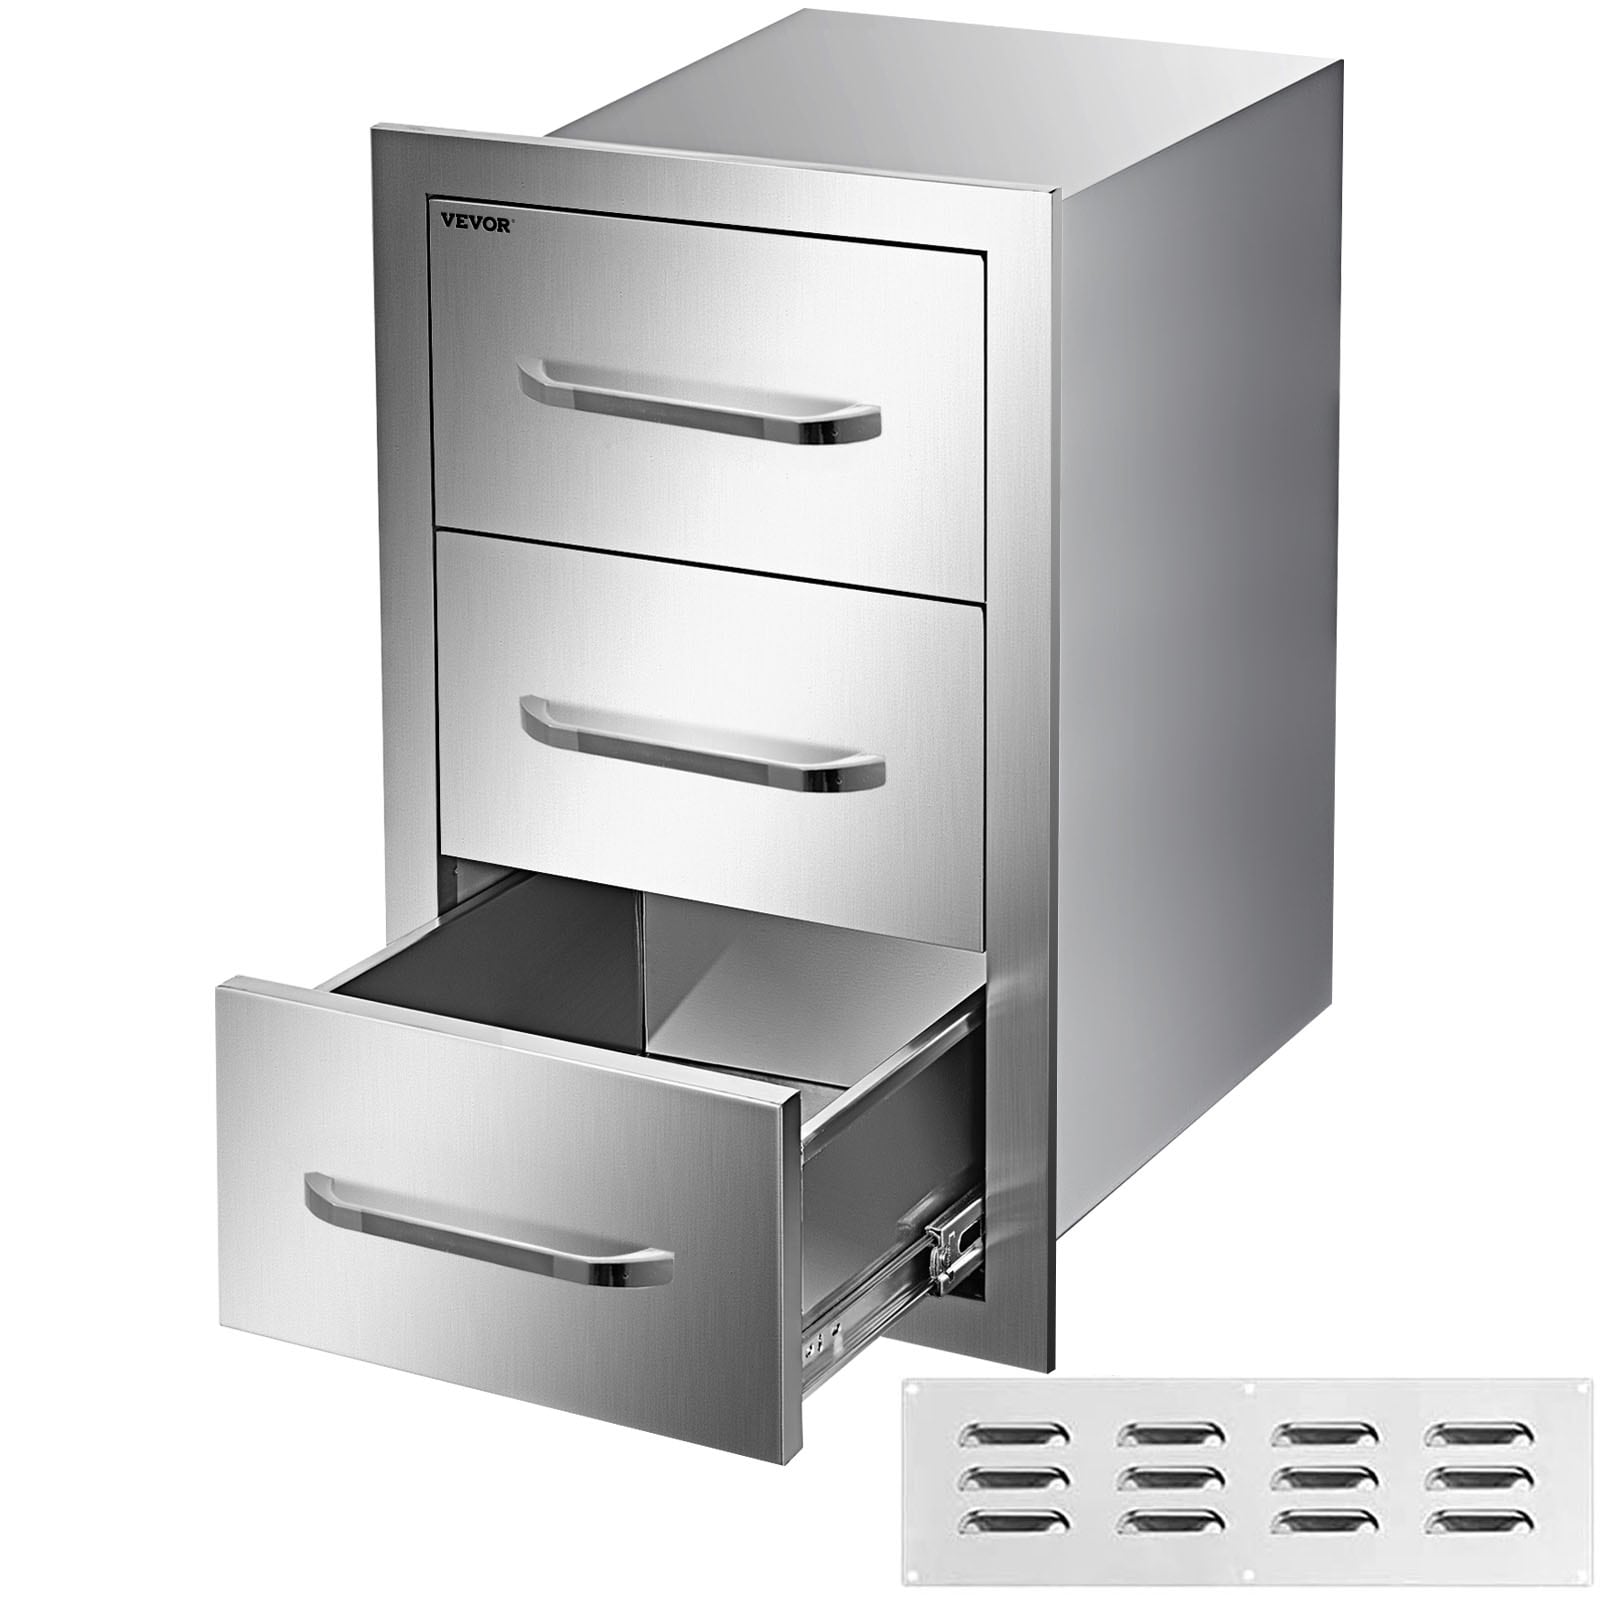 Hold N' Storage Pull Out Cabinet Organizer Sliding Drawer Kitchen Storage 14W x 21D, Silver